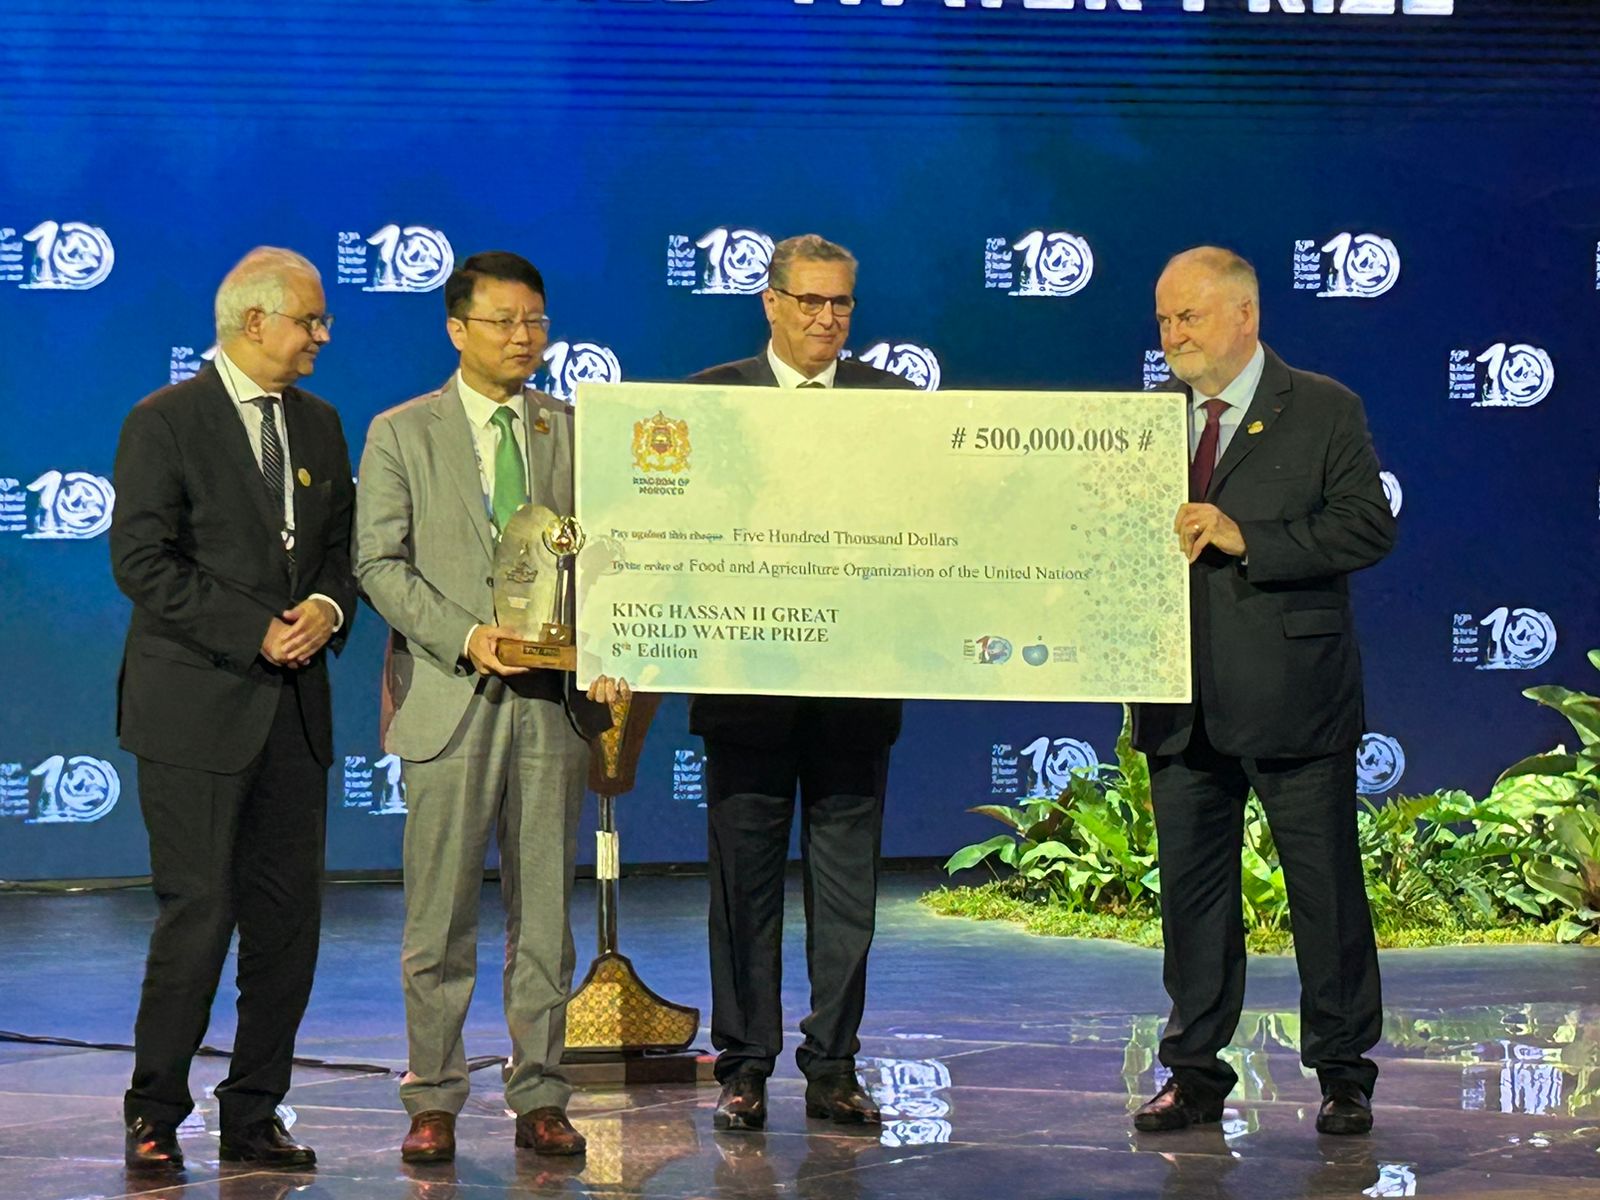 Le 8ème Grand Prix Mondial Hassan II de l'Eau décerné à la FAO à Bali